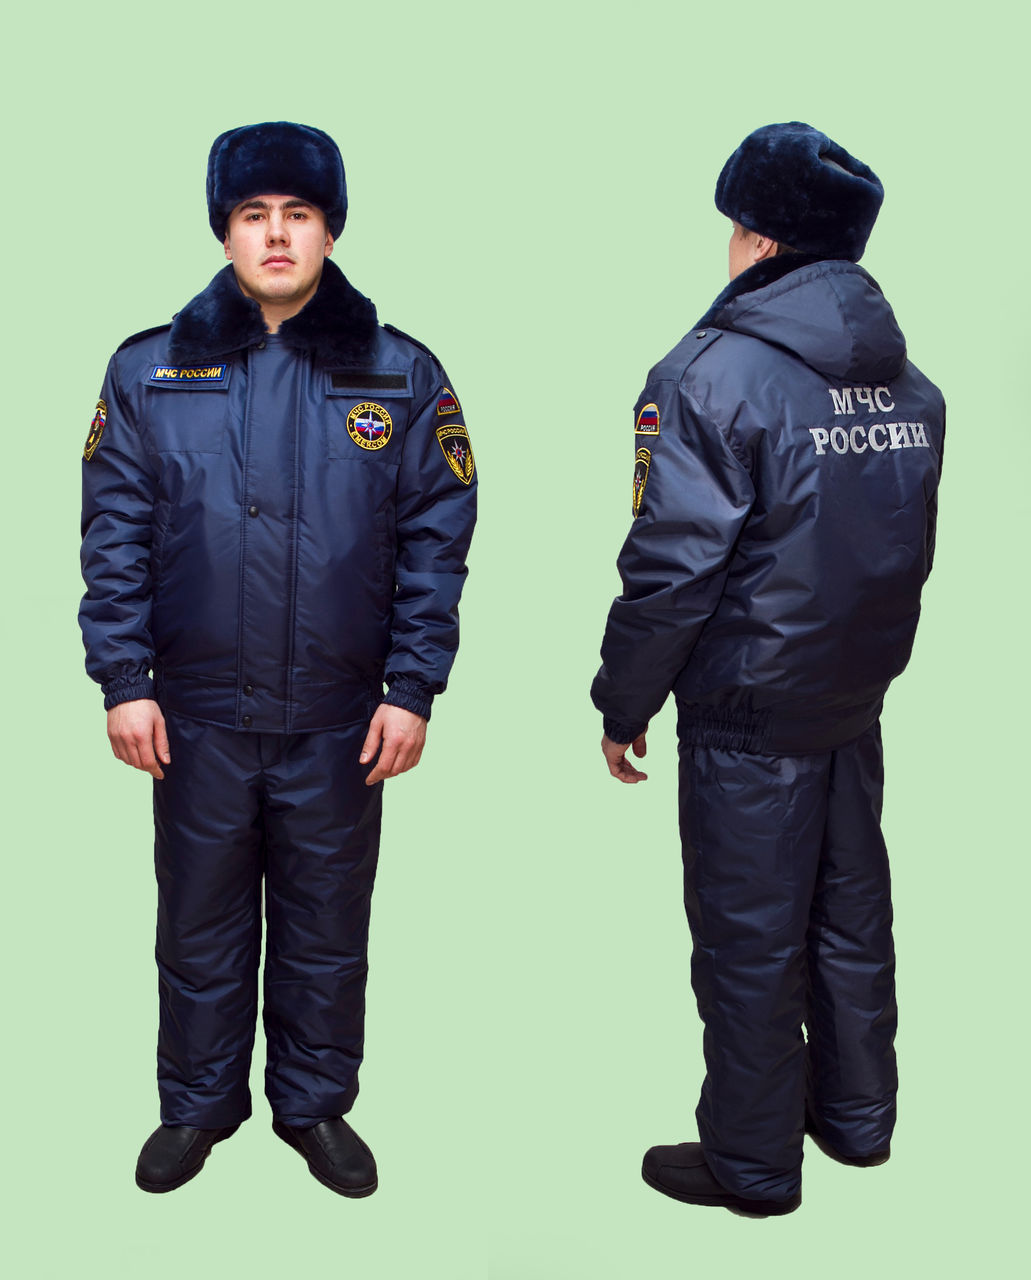 Одежда для сотрудников полиции